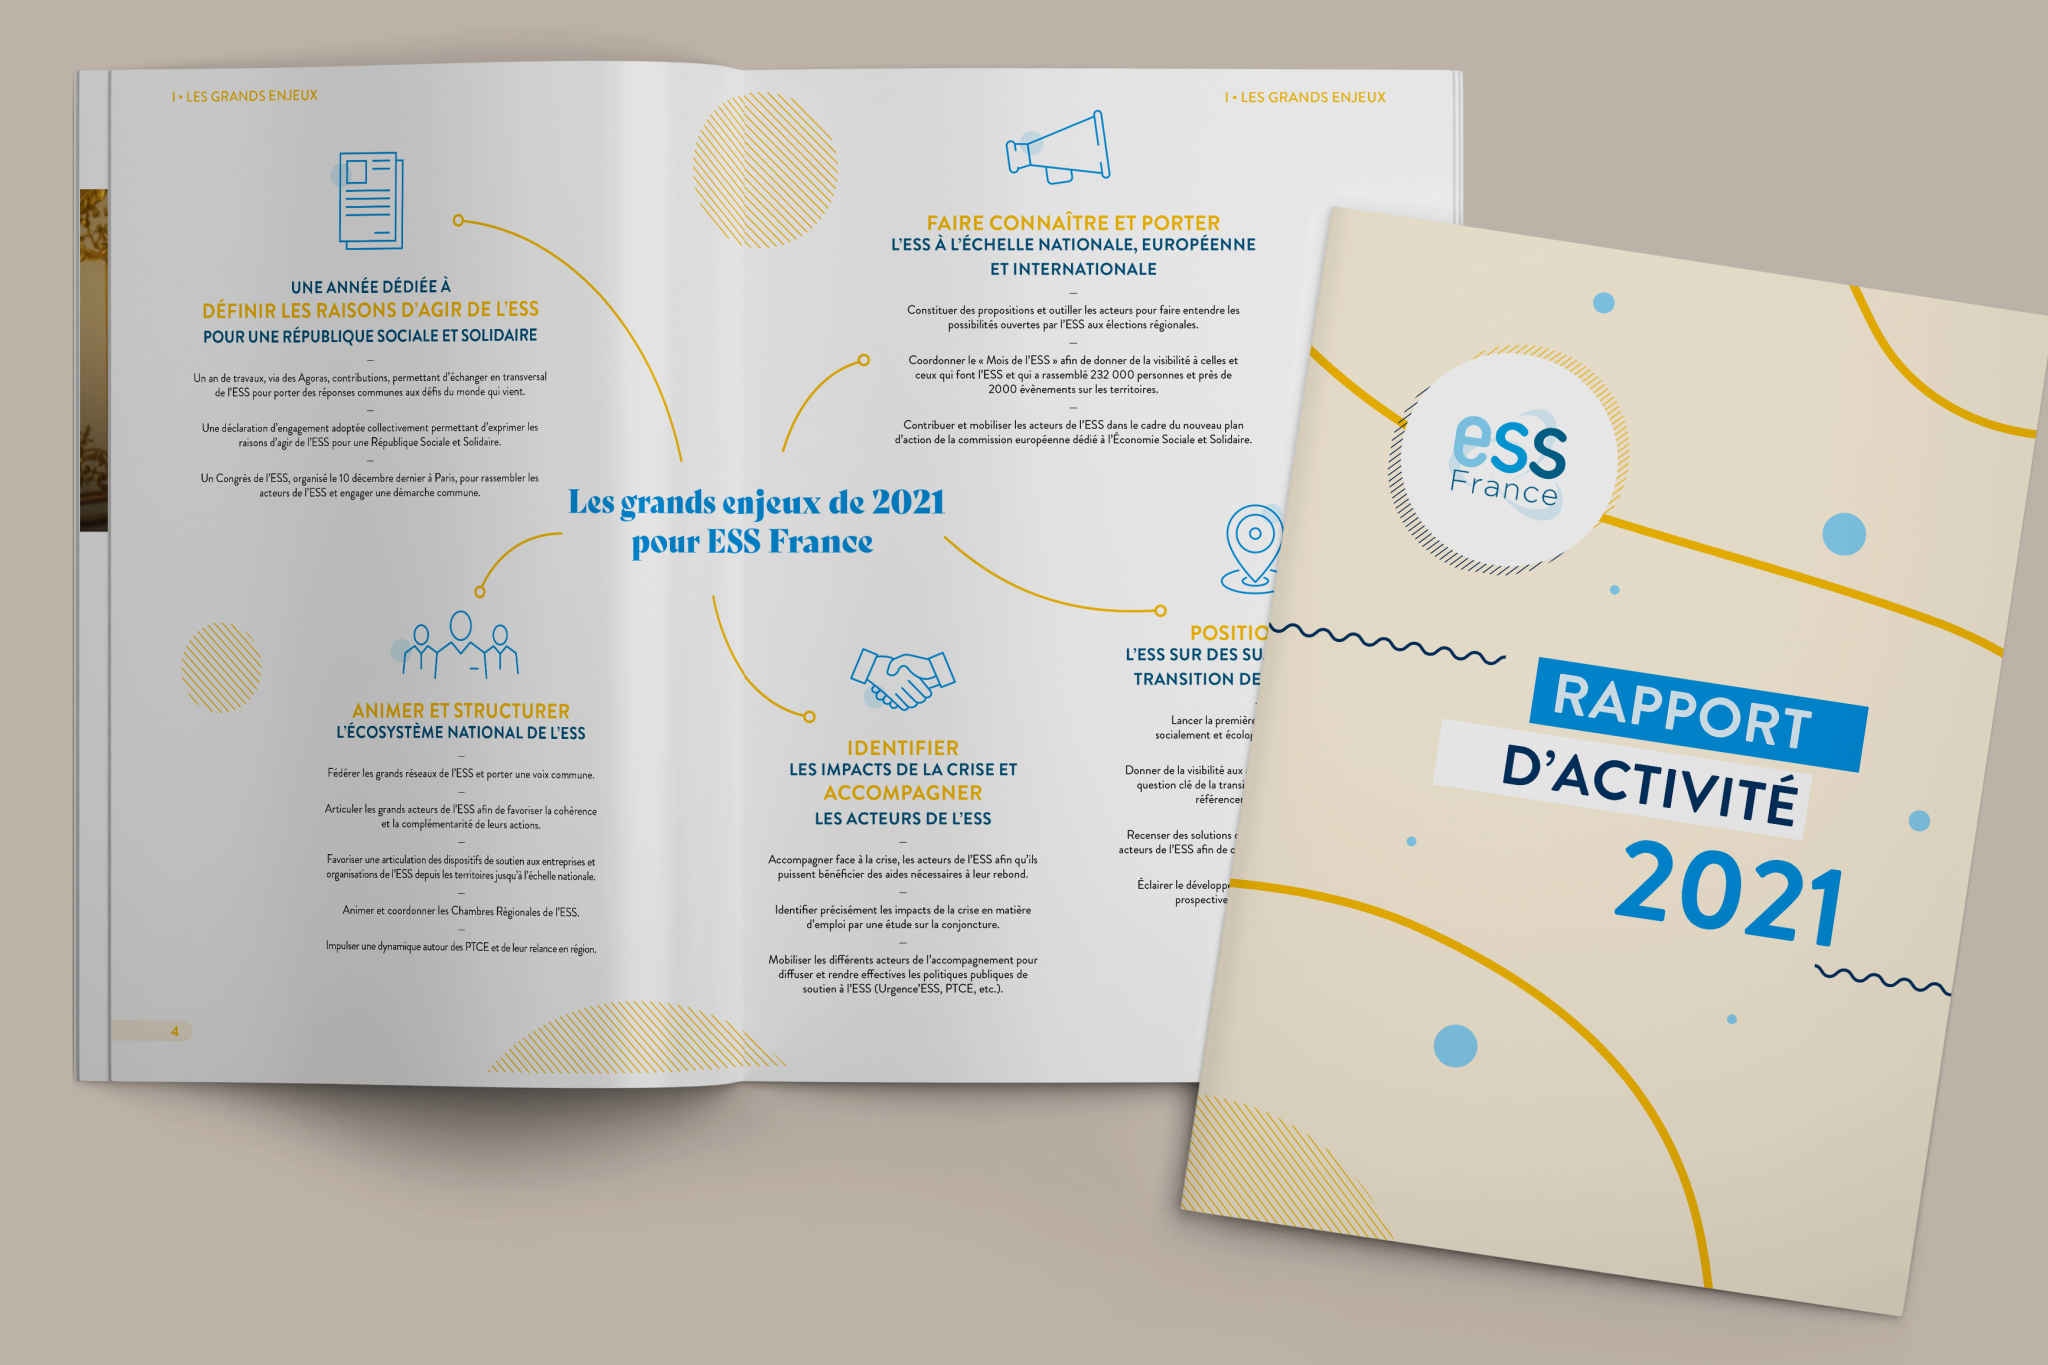 Rapport d'activité 2021 d'ESS France